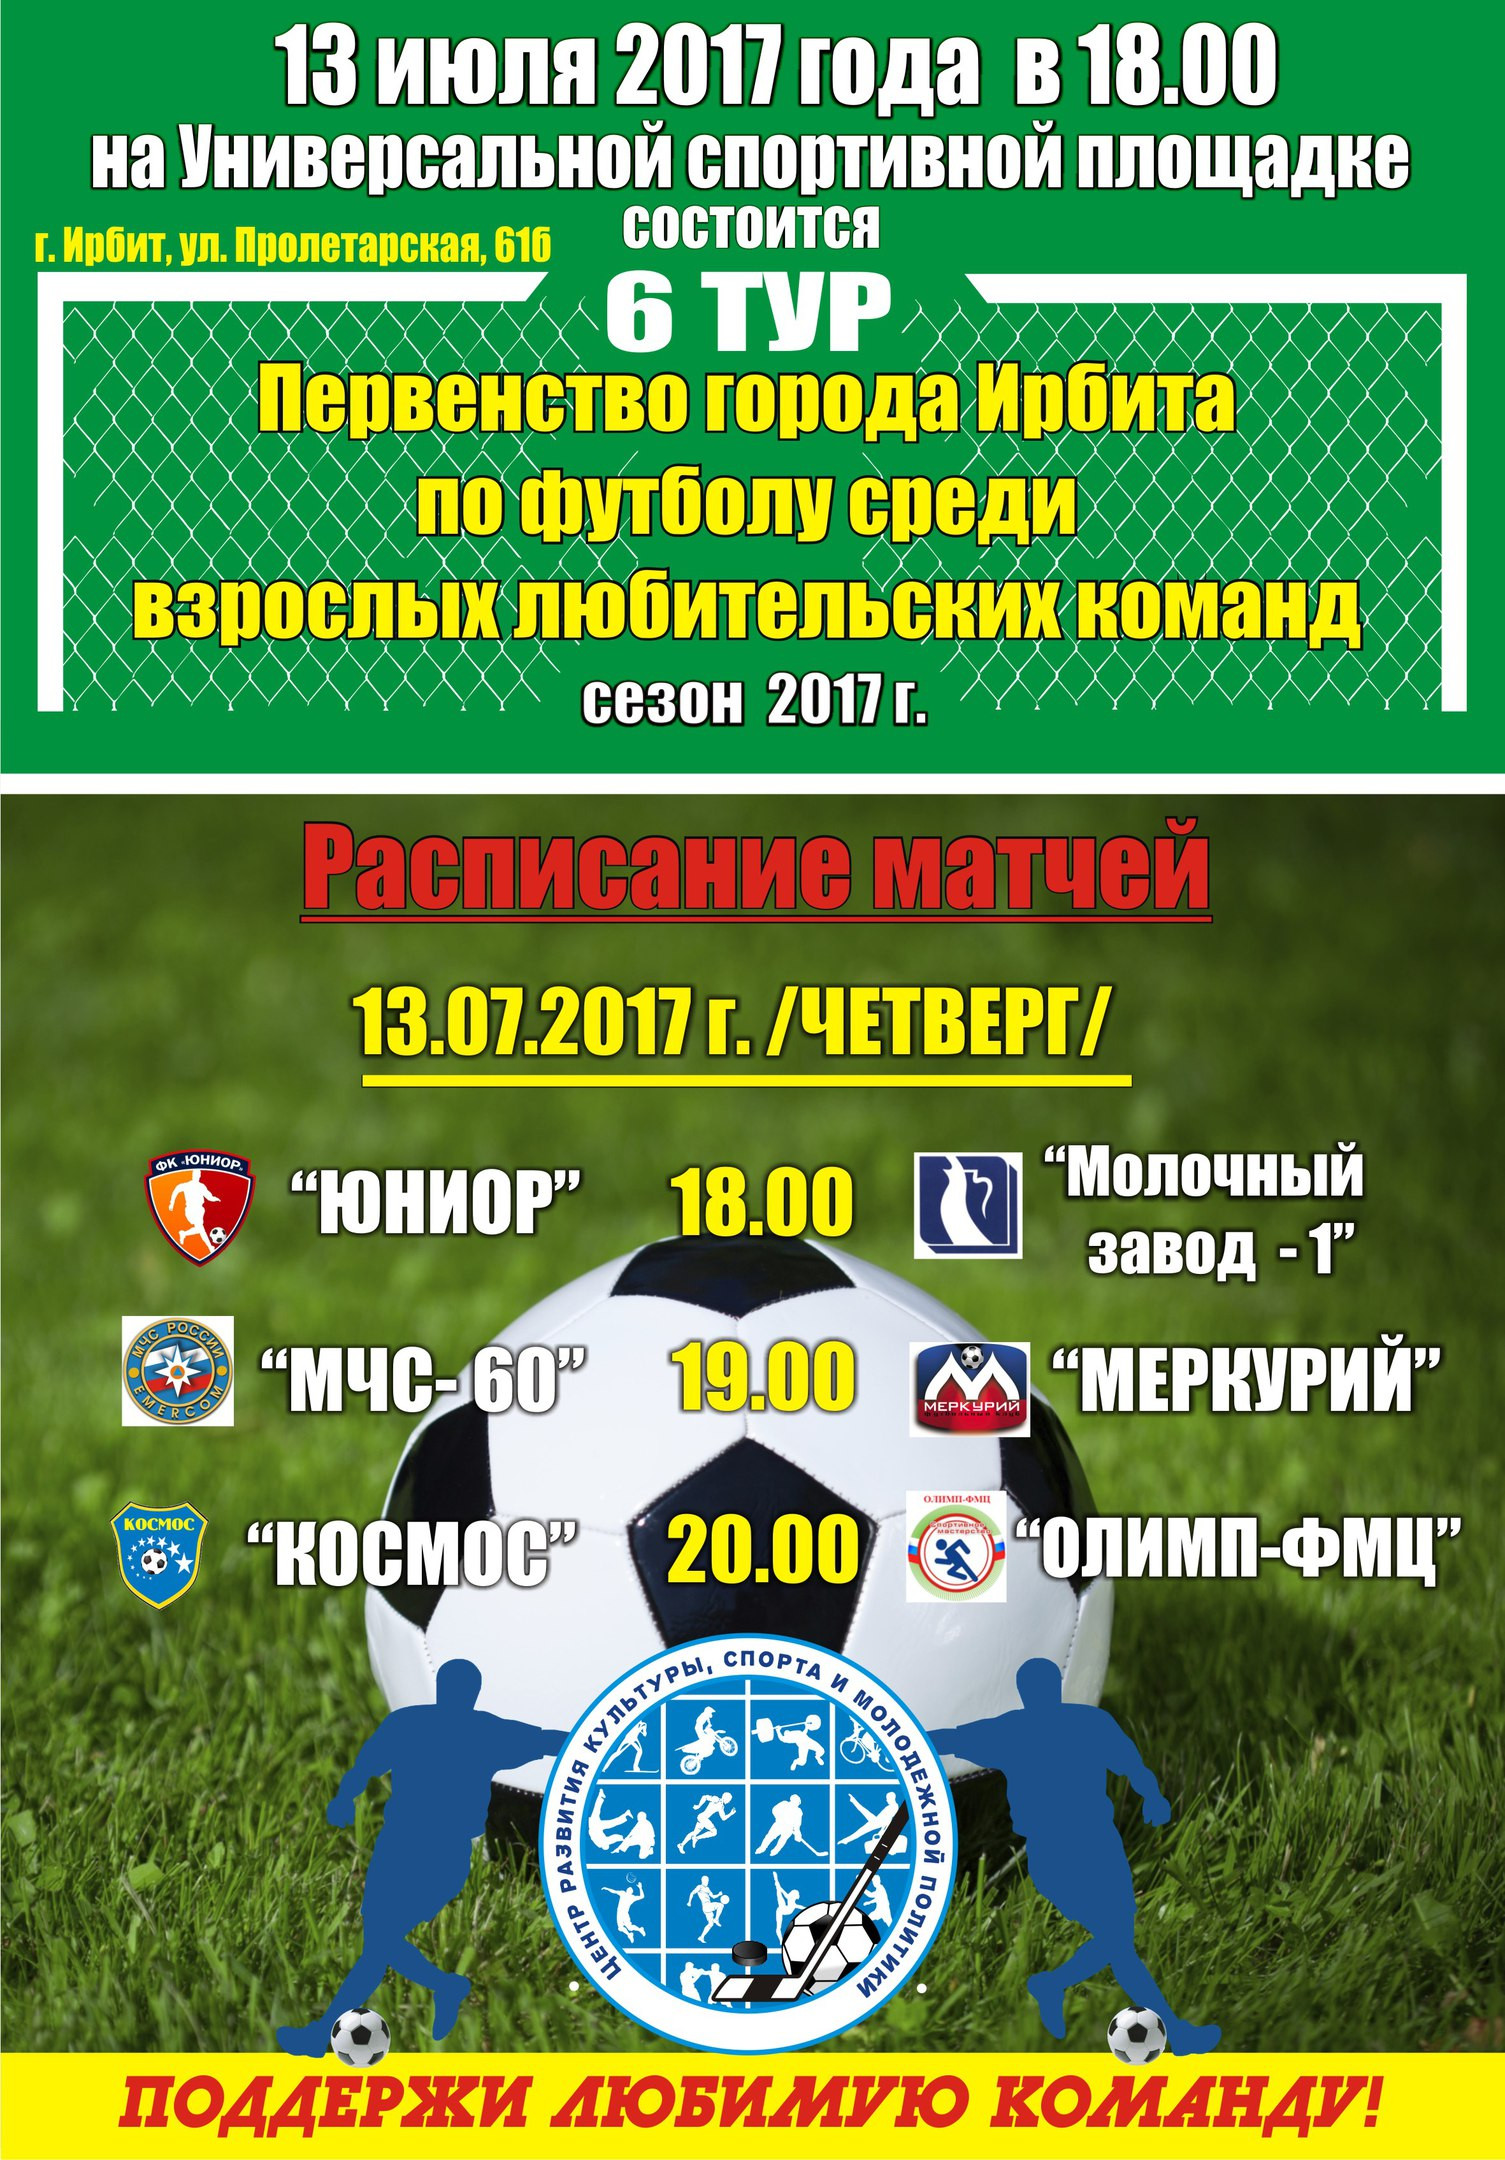 6-й тур Первенства города Ирбита по футболу среди взрослых любительских команд